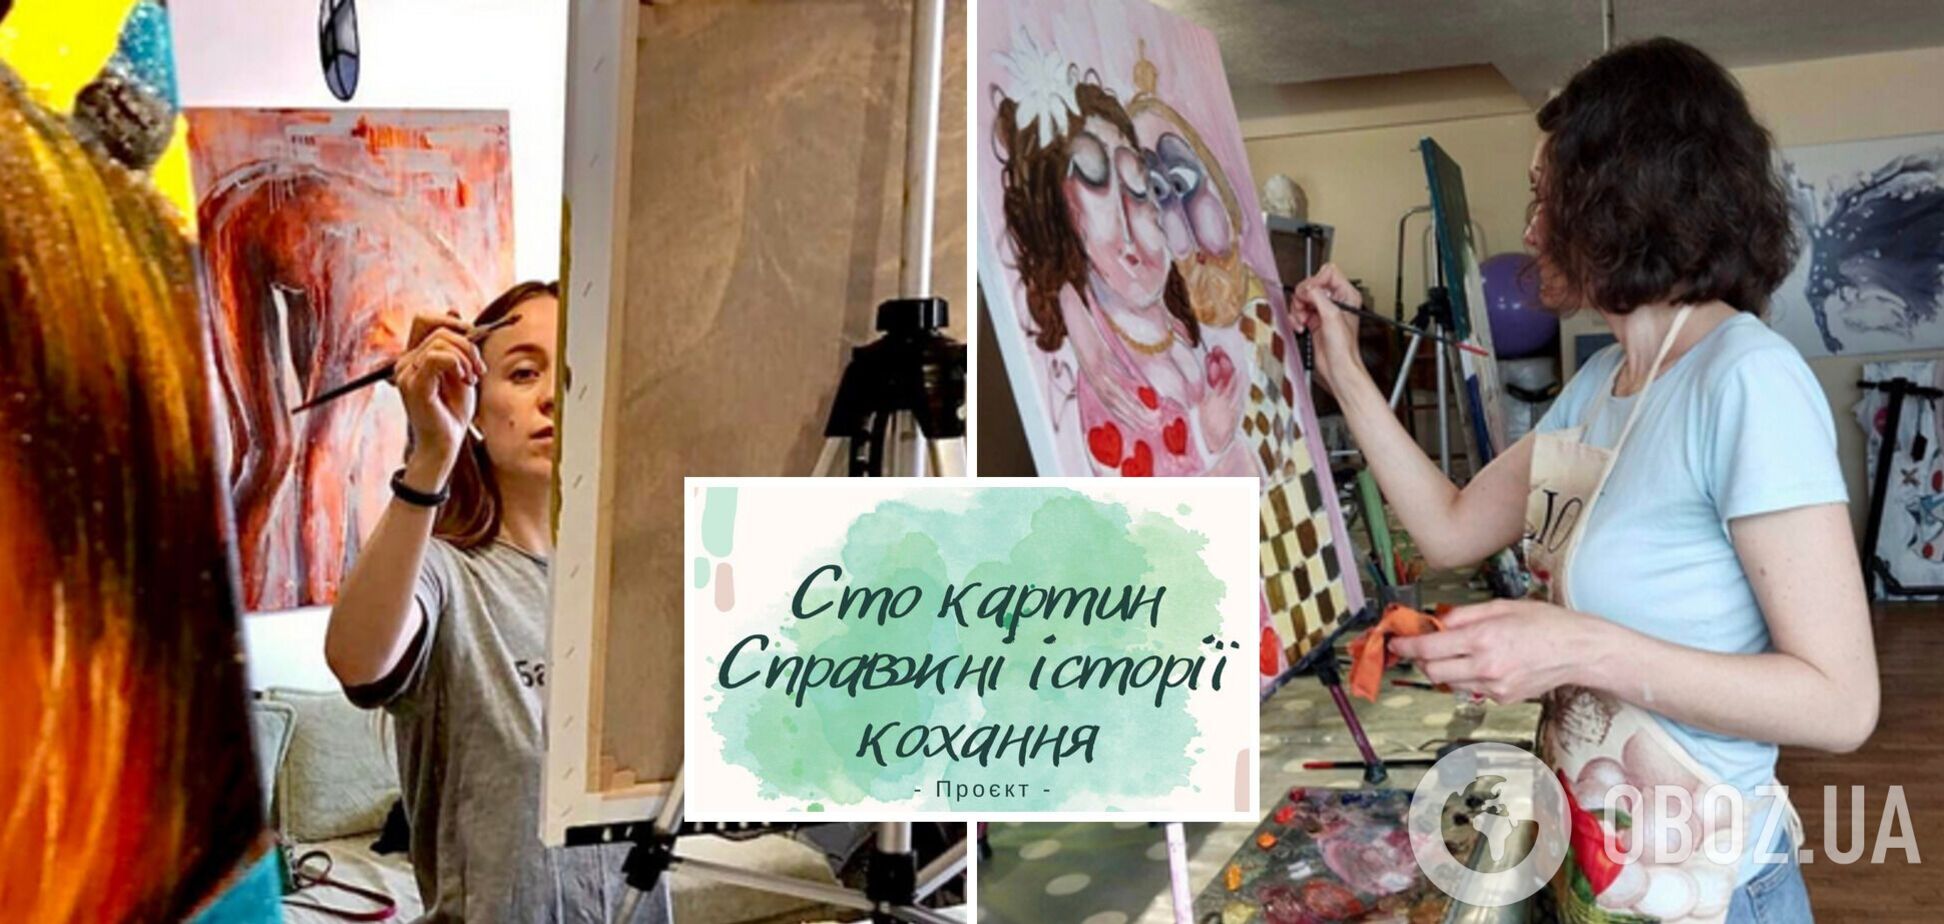 Сто картин. Настоящие истории любви: в Украине стартовал благотворительный проект для жен погибших героев